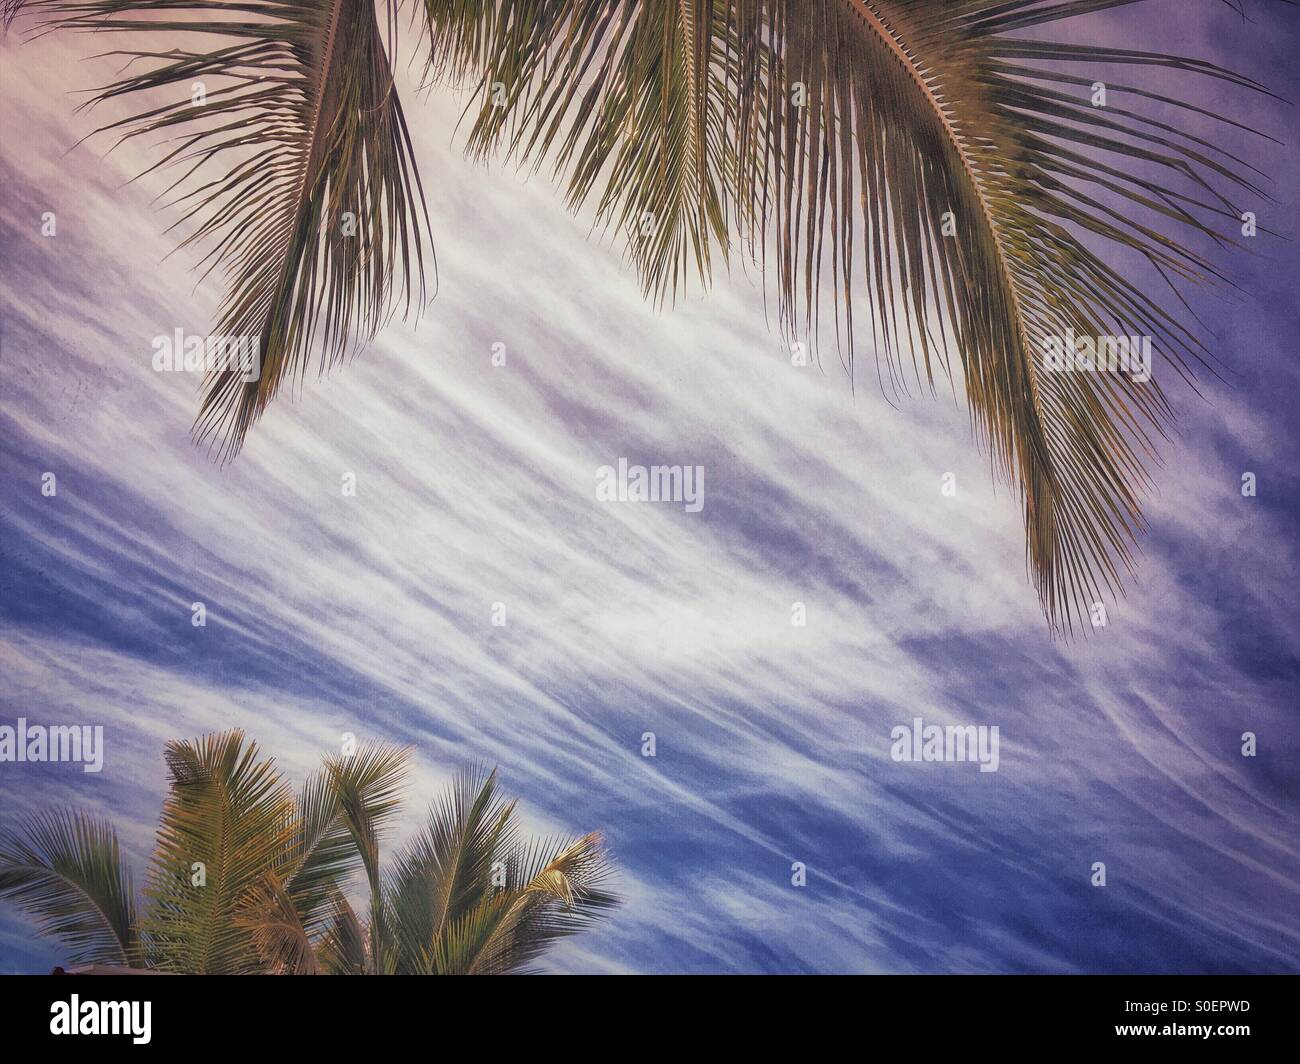 Stürmischen Wolken sind einen schönen Hintergrund für anmutige Palmwedel in einem tropischen Himmel. Stockfoto